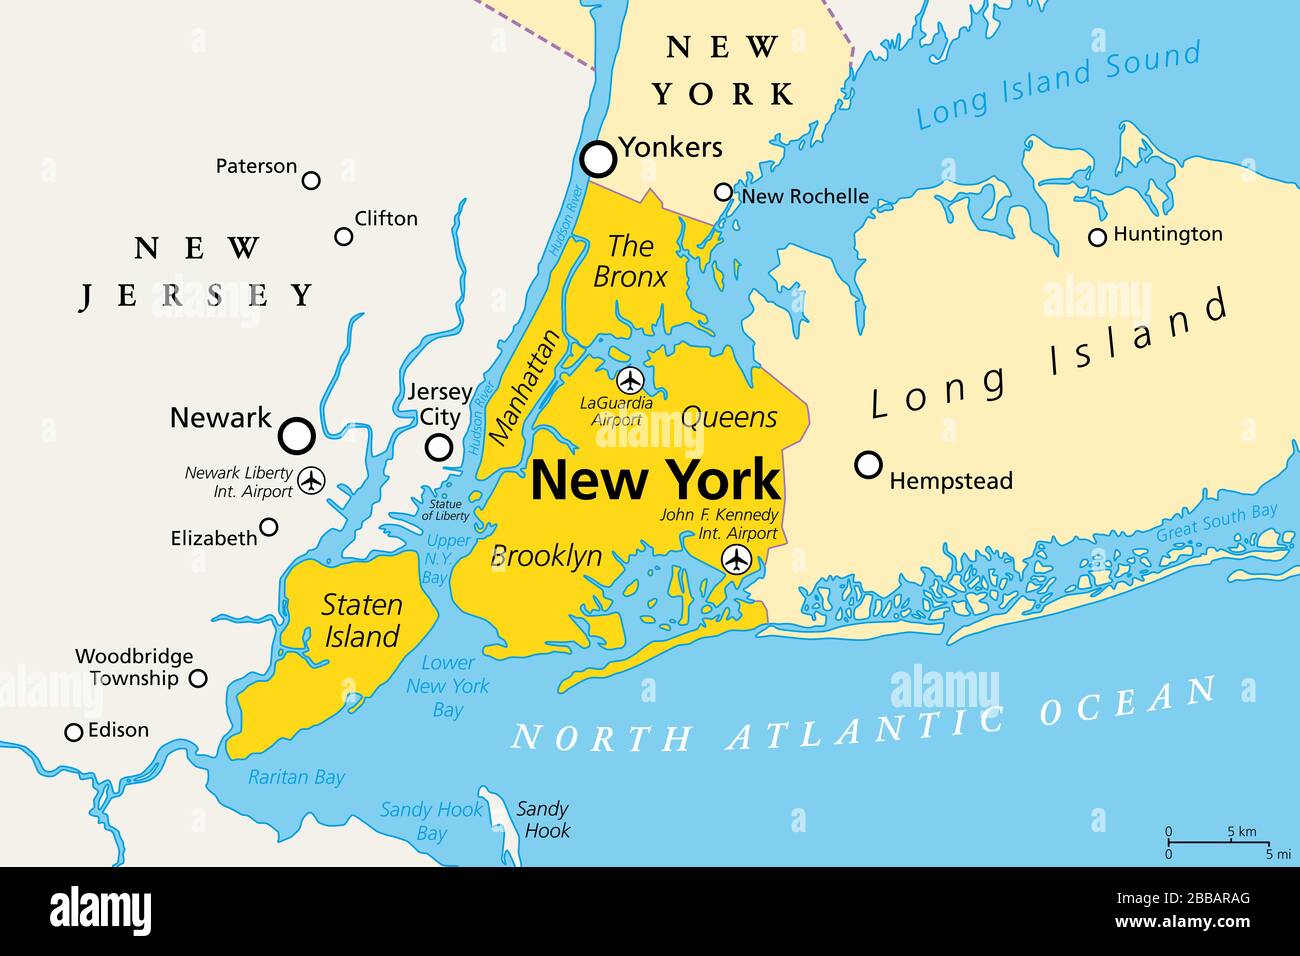 New York City, politische Karte. Bevölkerungsreichste Stadt der Vereinigten Staaten, im Bundesstaat New York gelegen. Manhattan, Bronx, Queens, Brooklyn, Staten Island. Stockfoto